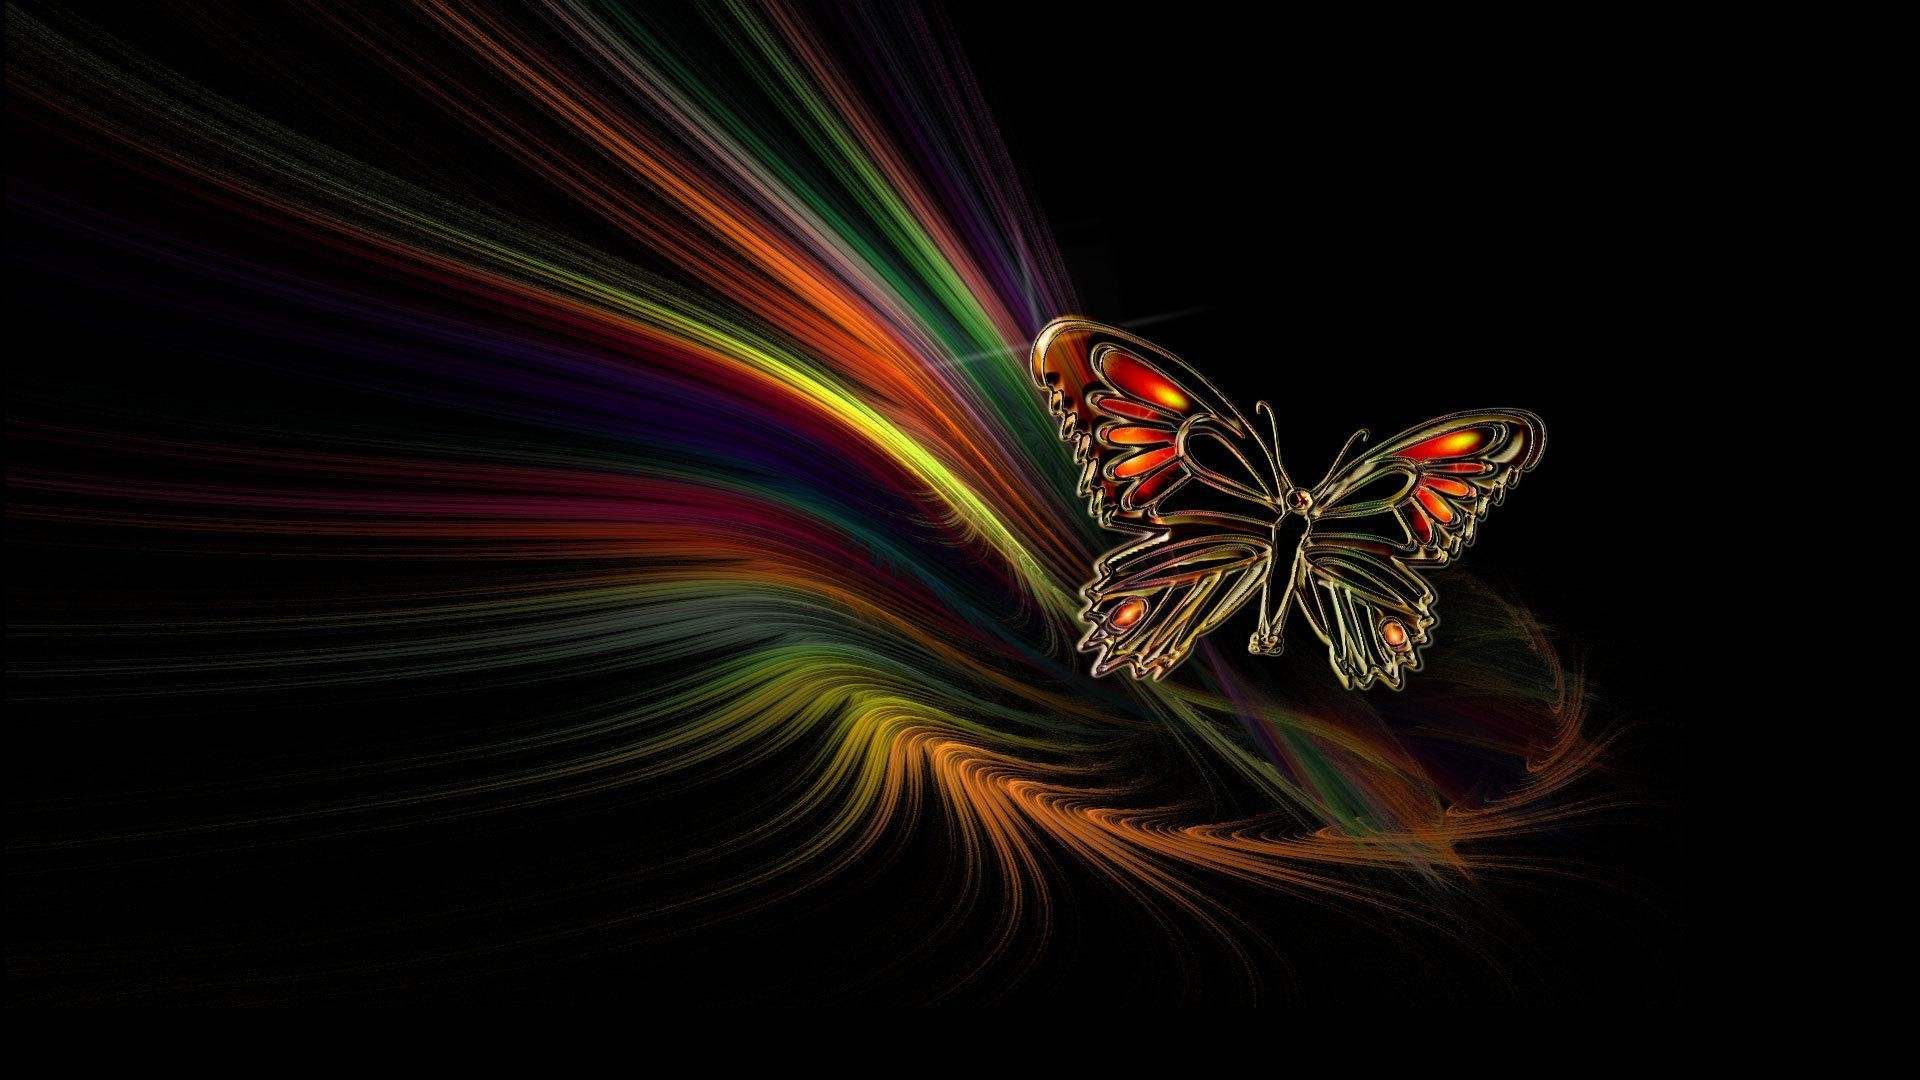 1920x1080 Free Wallpaper Butterflies - WallpaperSafari Cool Butterfly Wallpapers -  Wallpapers Browse 3D Rainbow Backgrounds ...